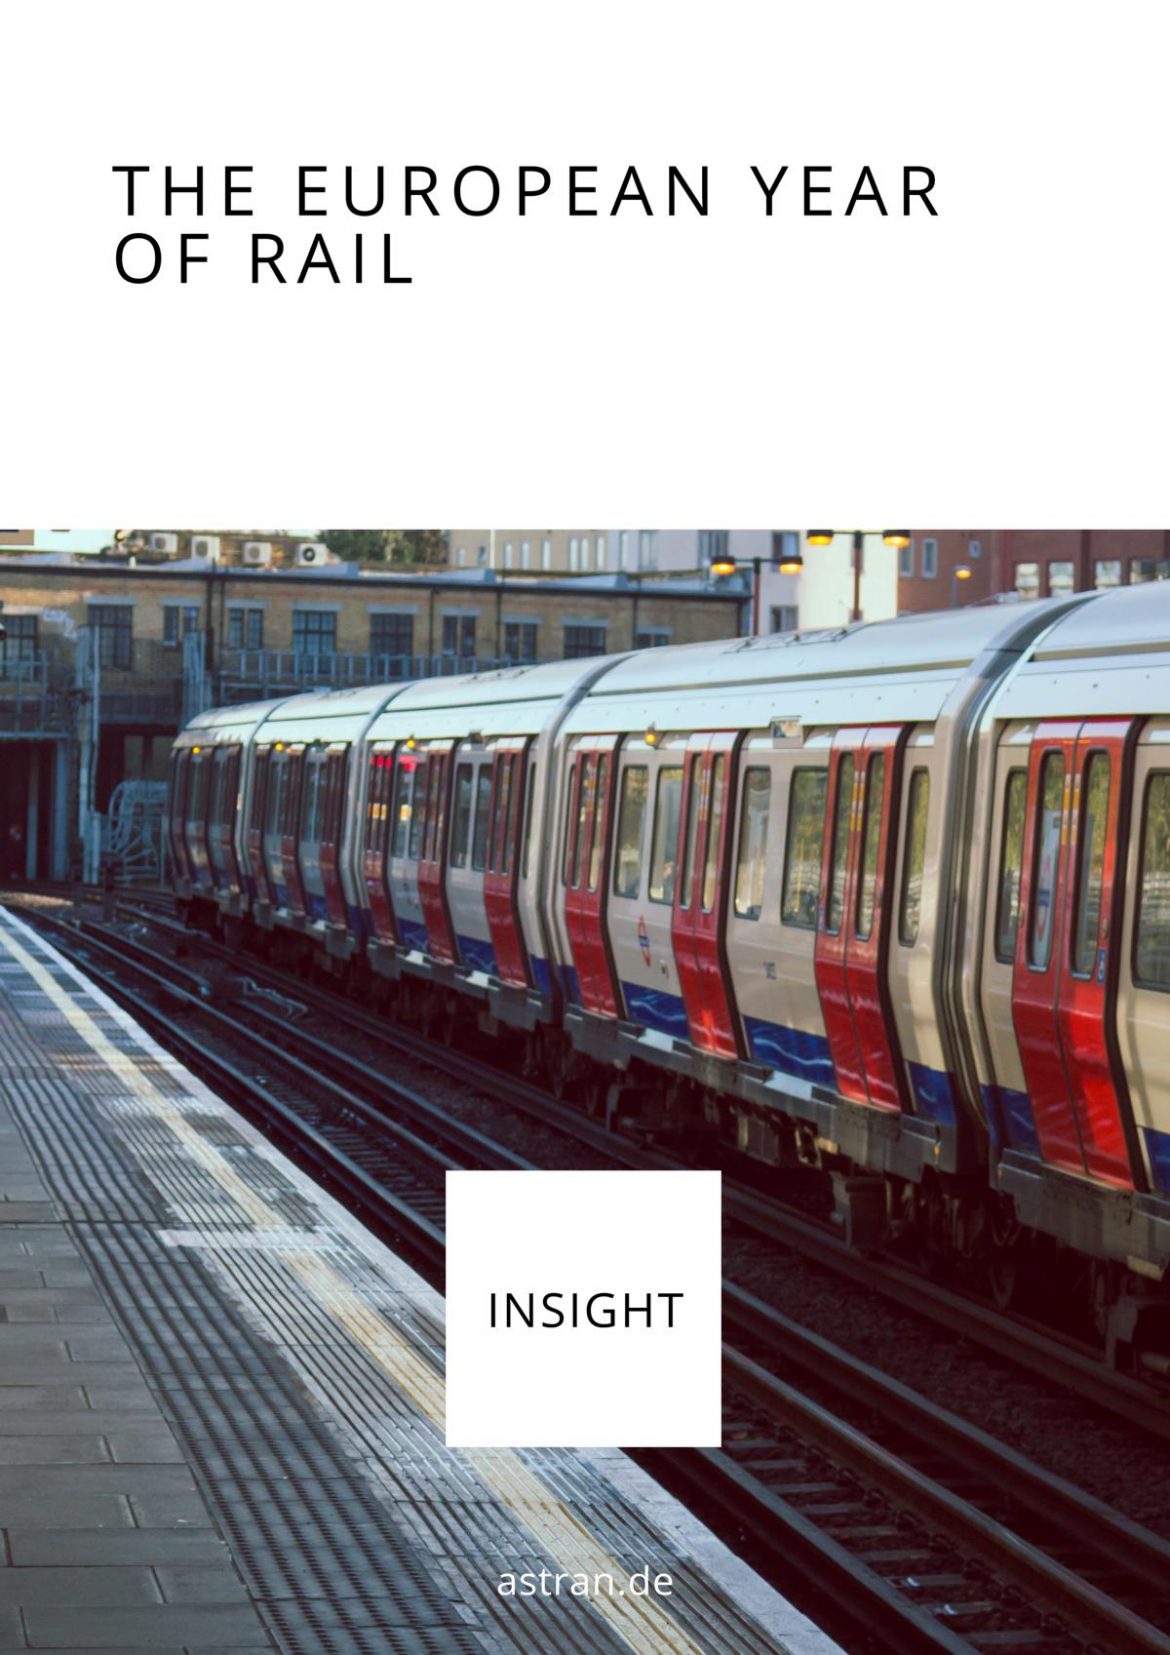 The European Year of Rail